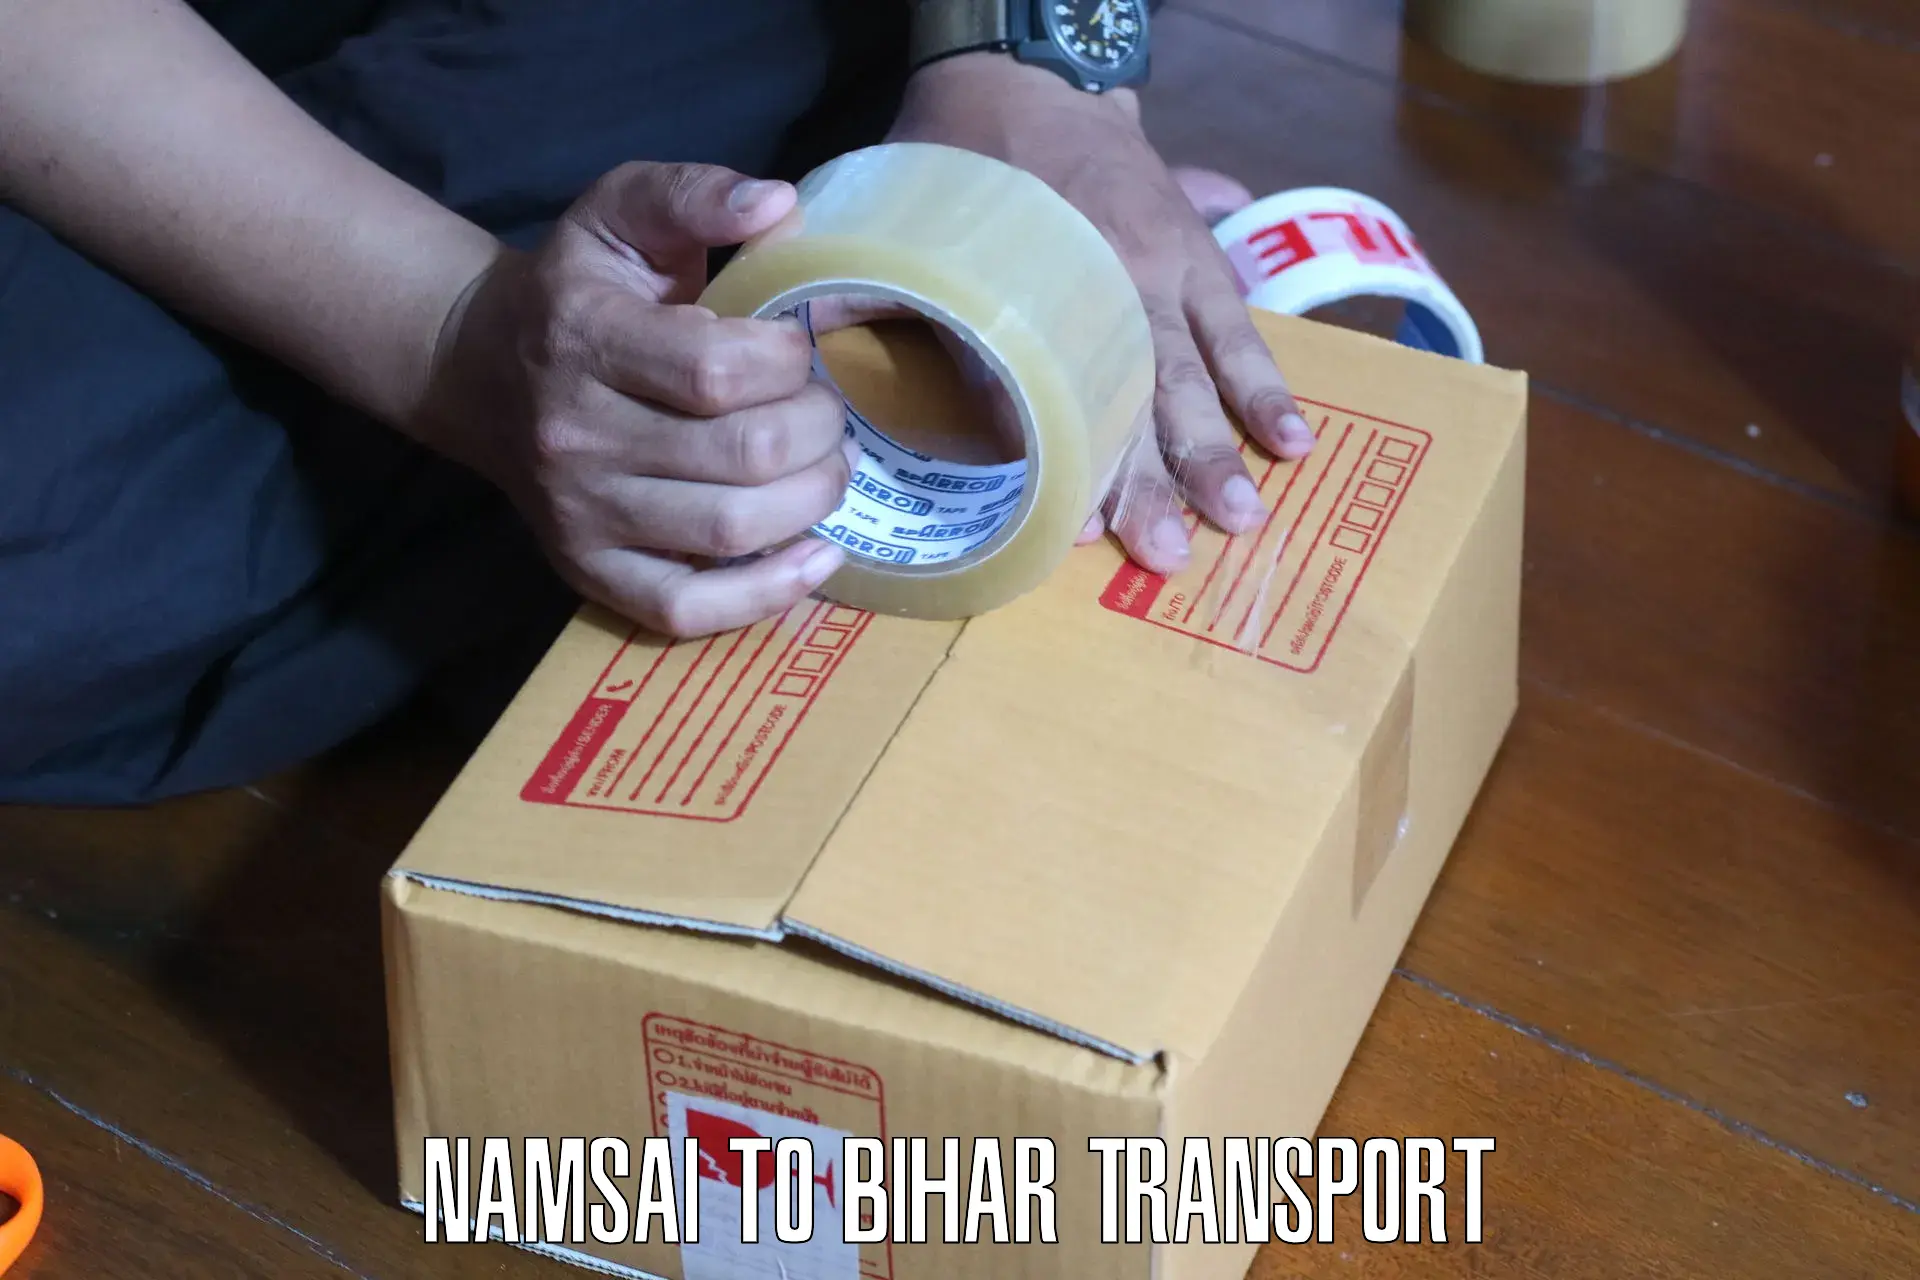 Nearest transport service Namsai to Phulparas